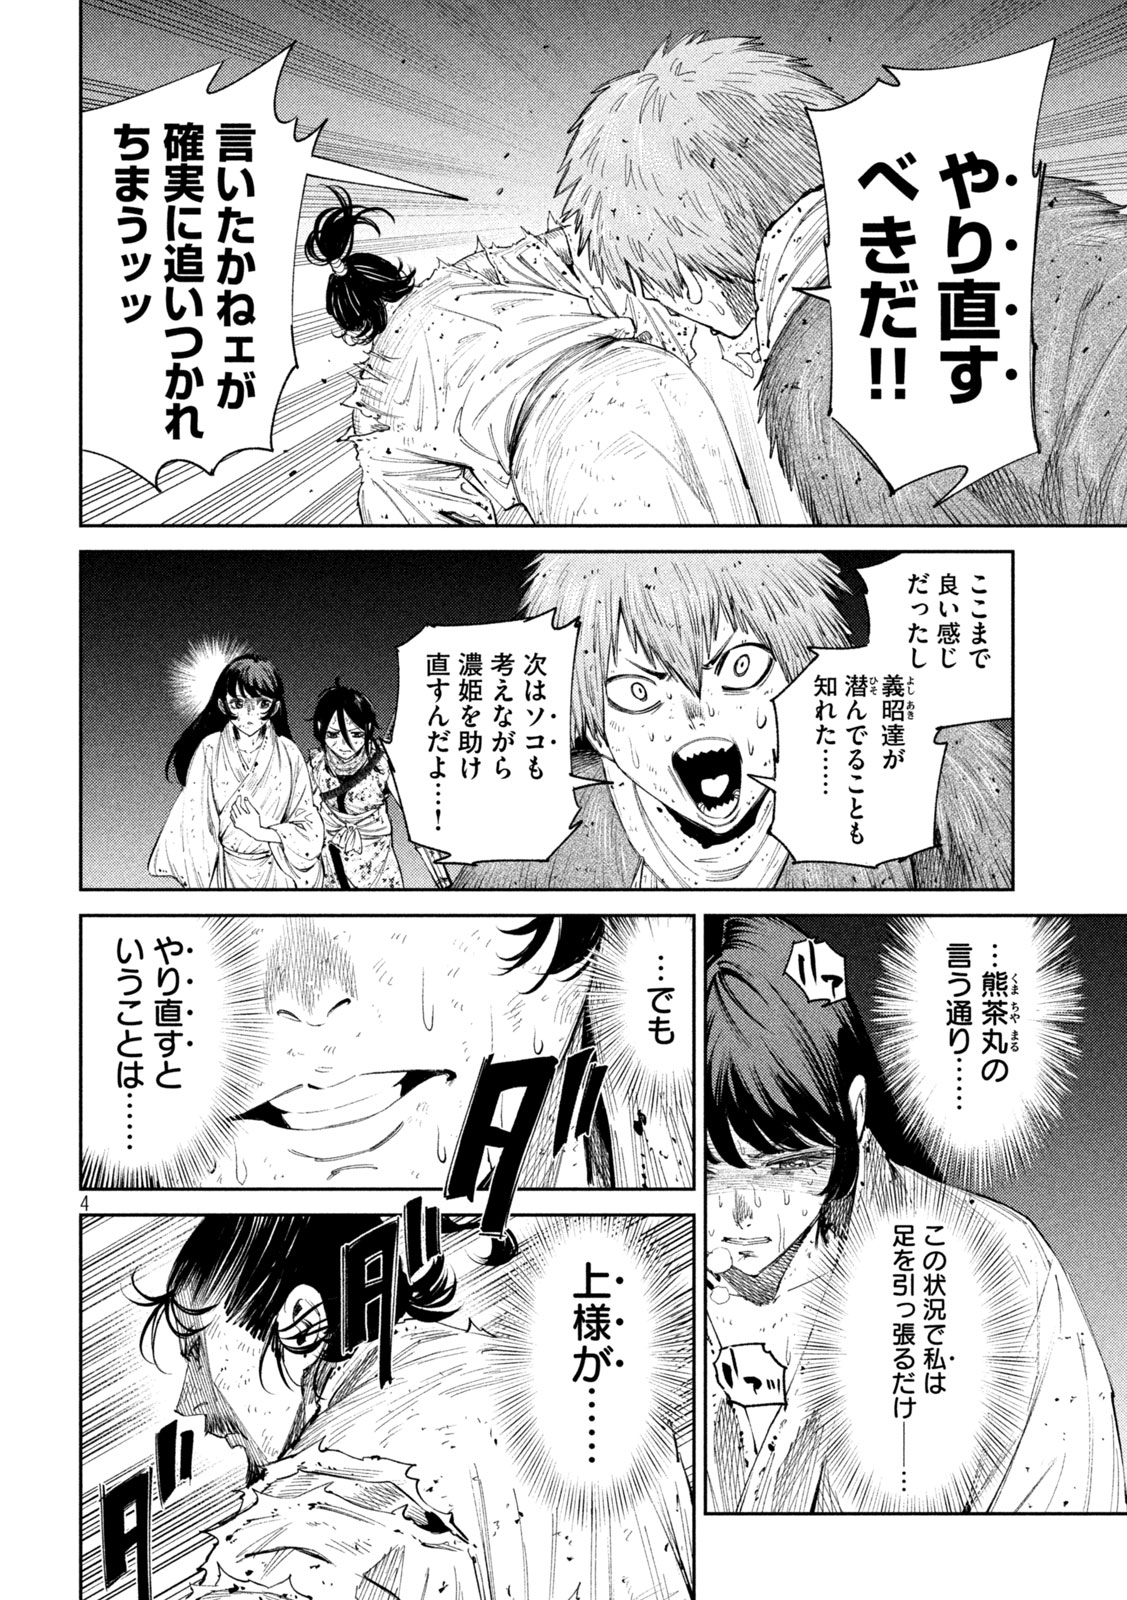 Nando toki o kurikaeshitemo Honnouji ga moerunjaga! - Chapter 130 - Page 4